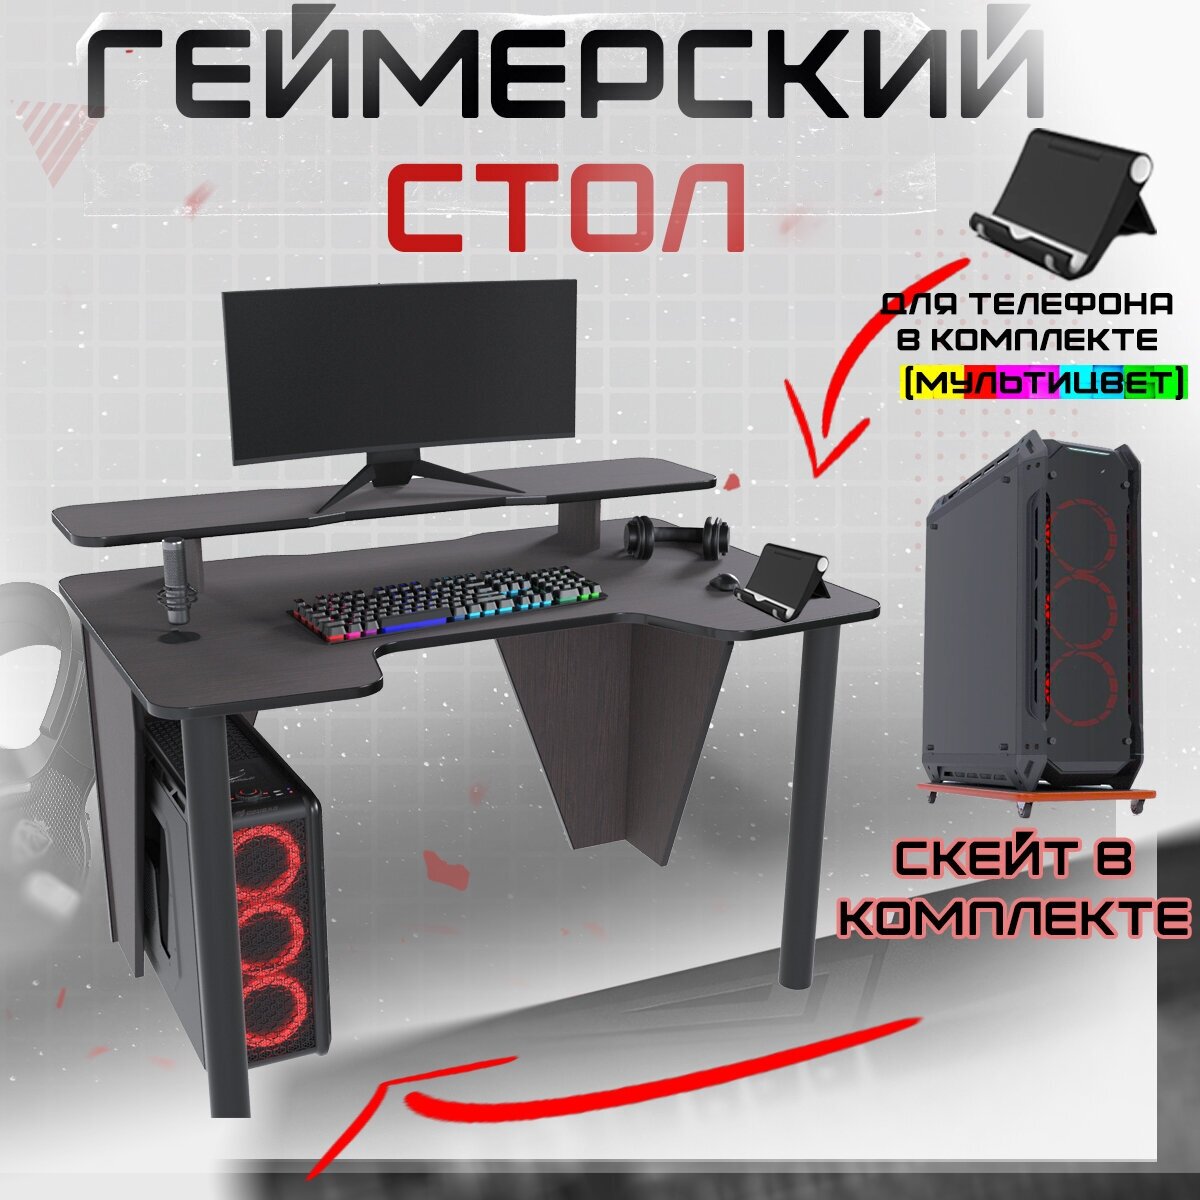 Геймерский игровой компьютерный письменный стол вектор лайт СЭТ венге черный - фотография № 1